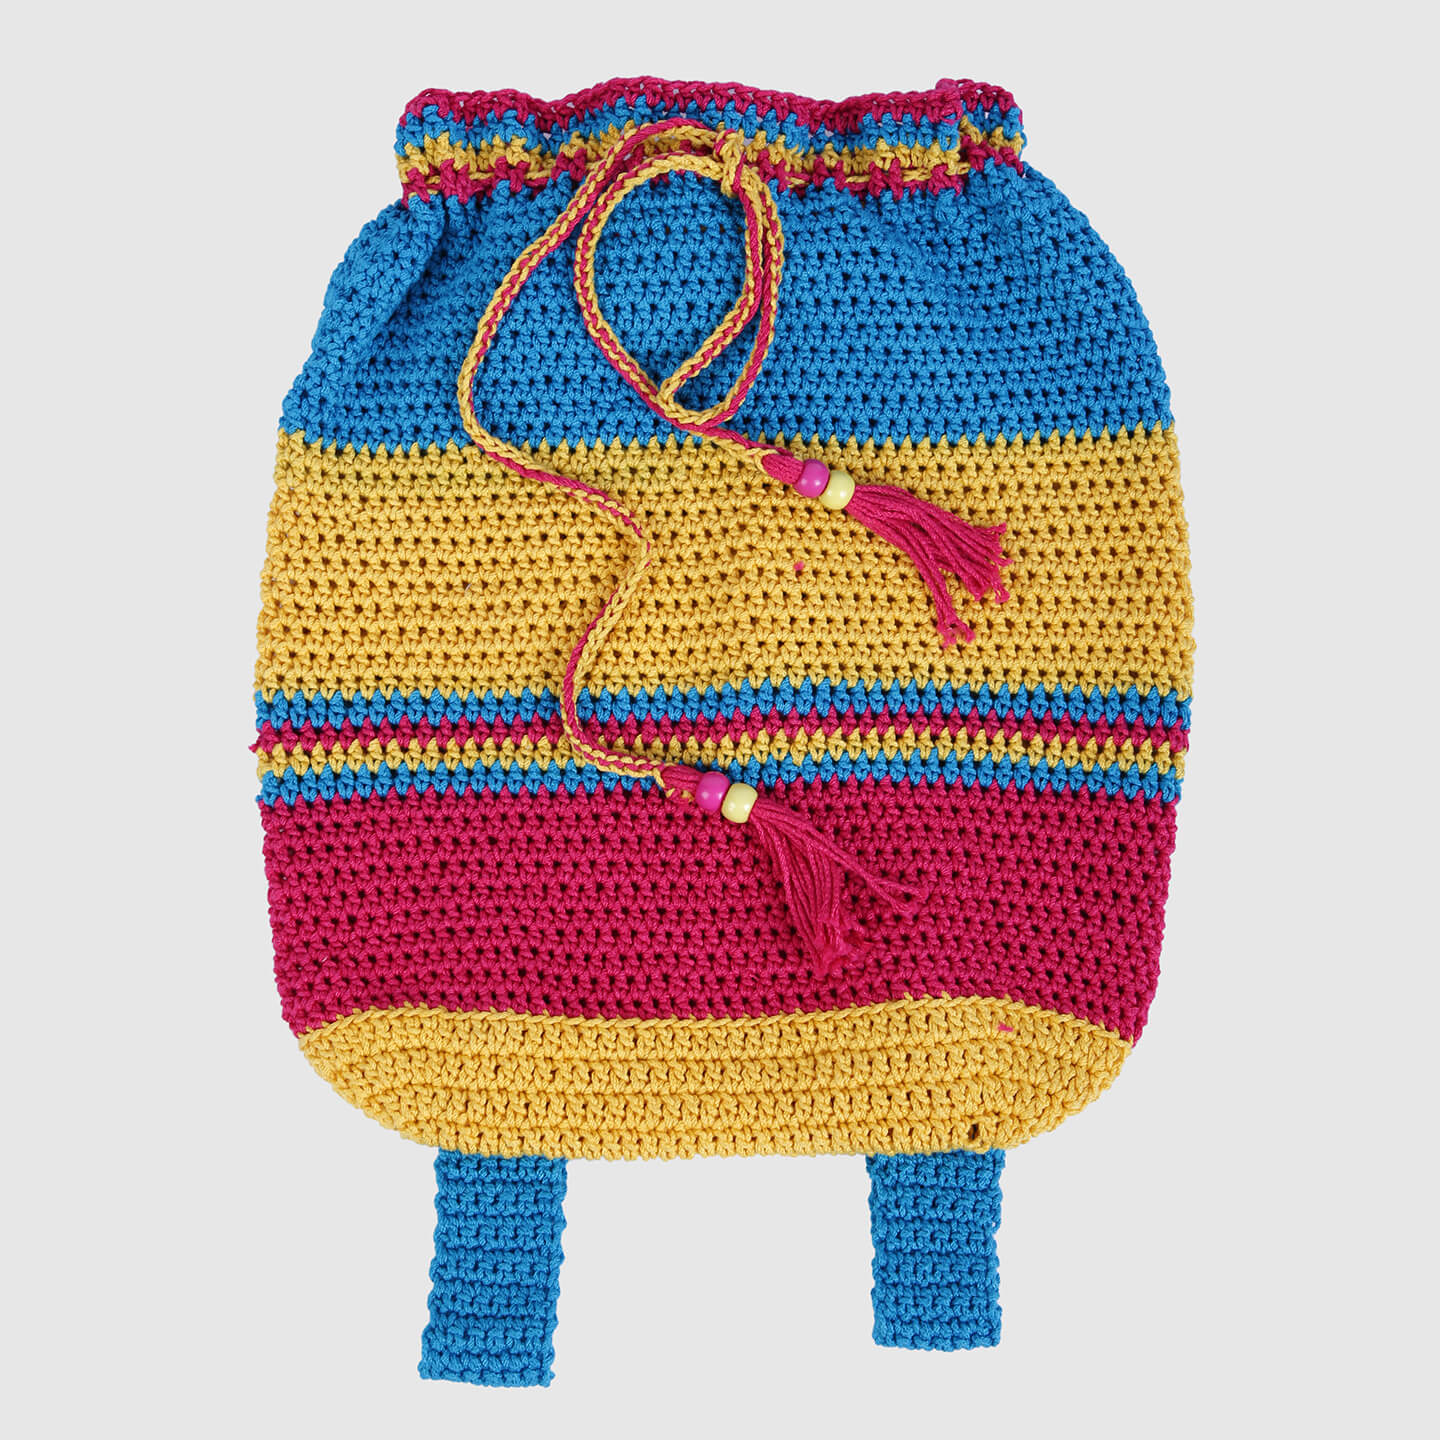 Handmade Crochet Backpack - Multi Color 3135